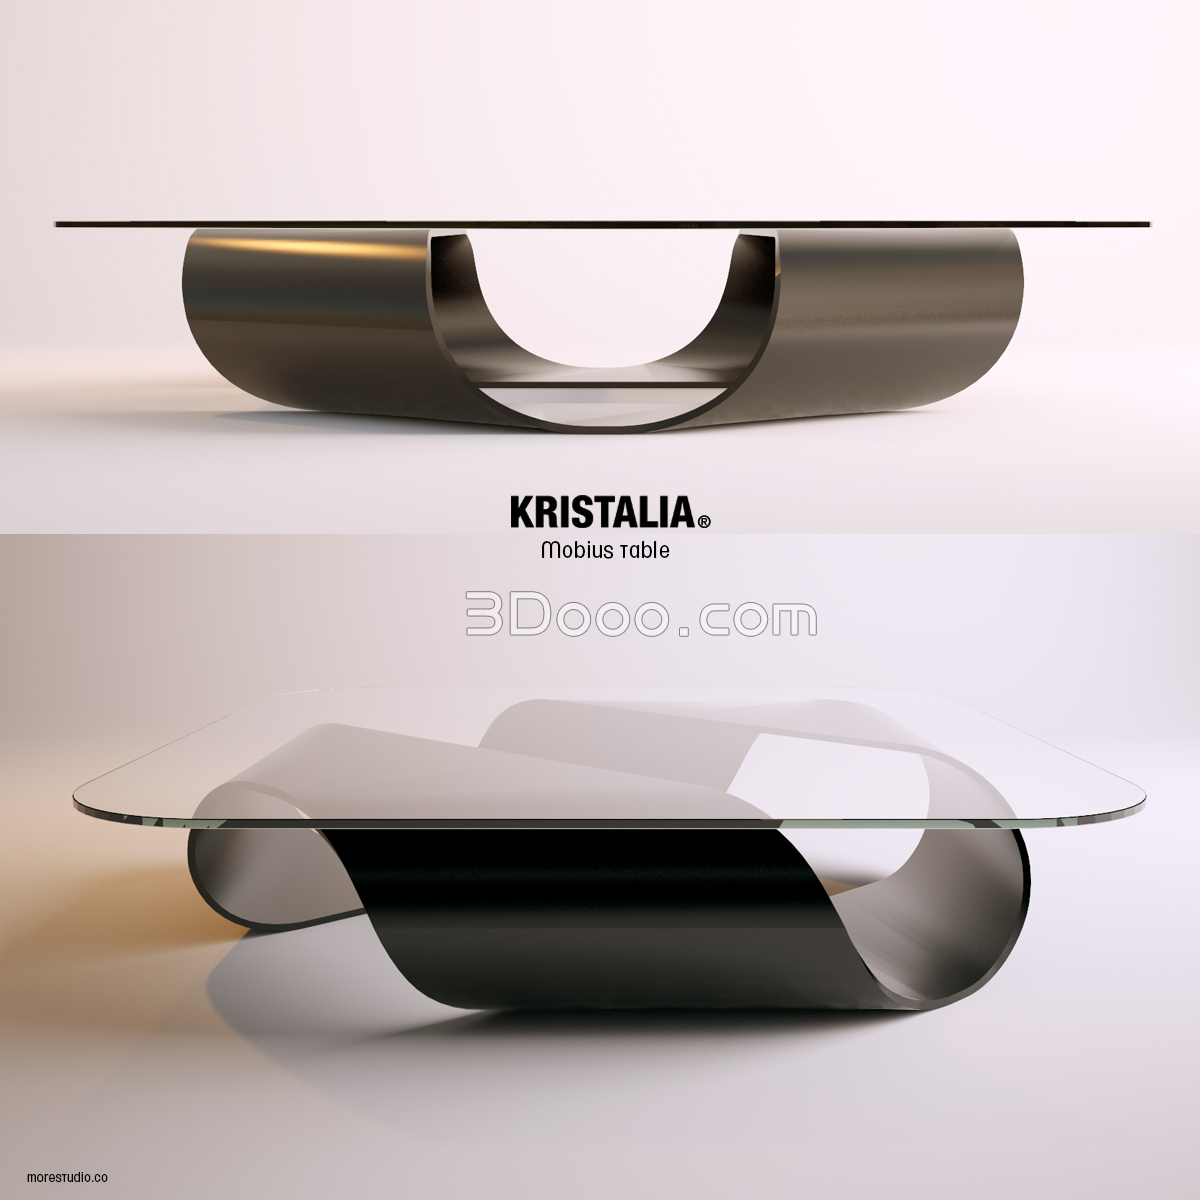 3DoooMobius table Kristalia.jpg